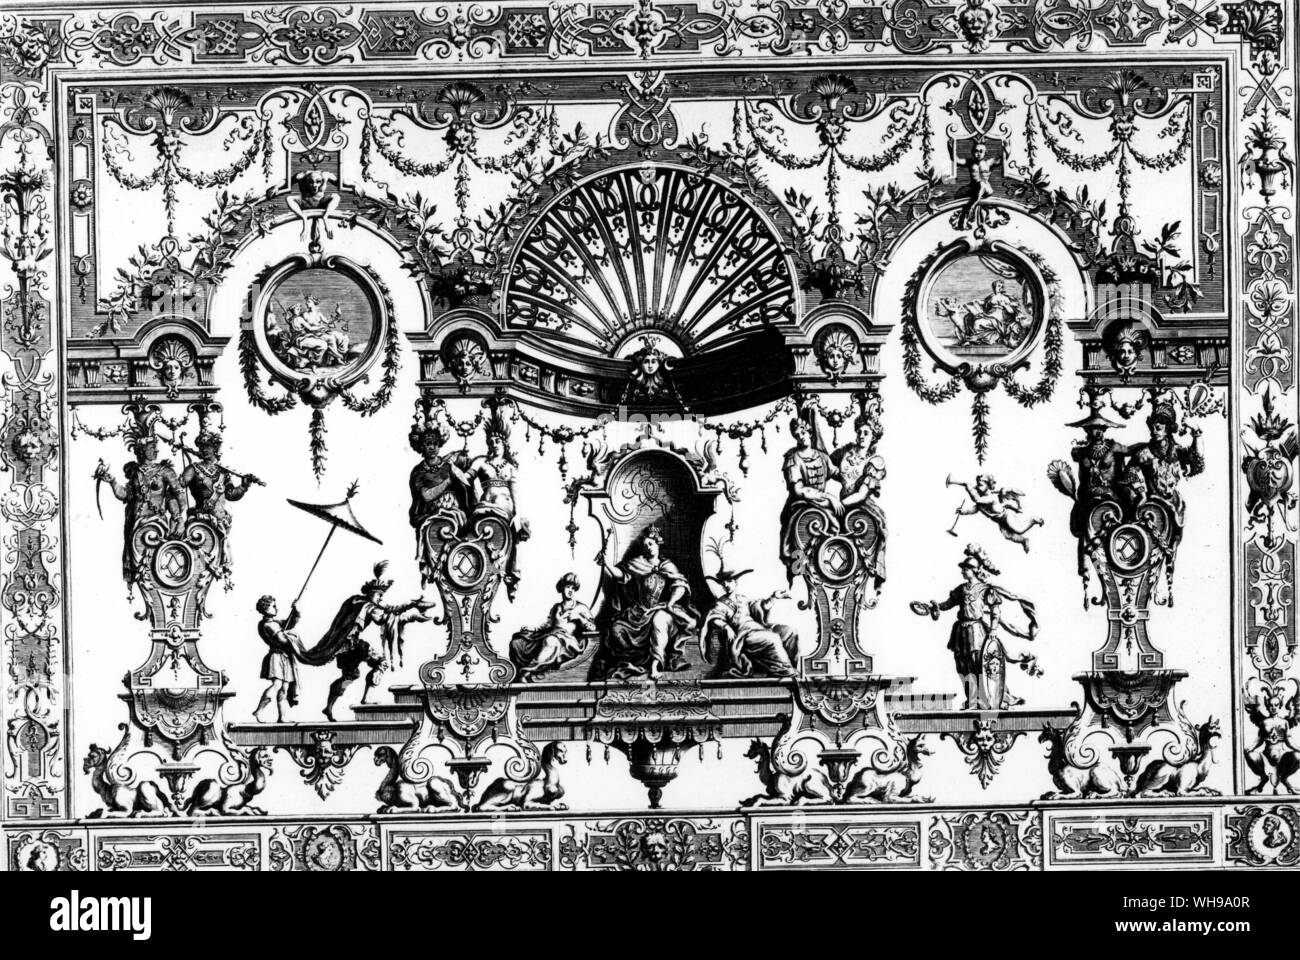 Panel grotesco diseñado por Berain chinoiserie con elementos que aparecen en una forma poco satisfactorio: véase la figura bajo la sombrilla y las cariátides de la extrema derecha e izquierda. Foto de stock